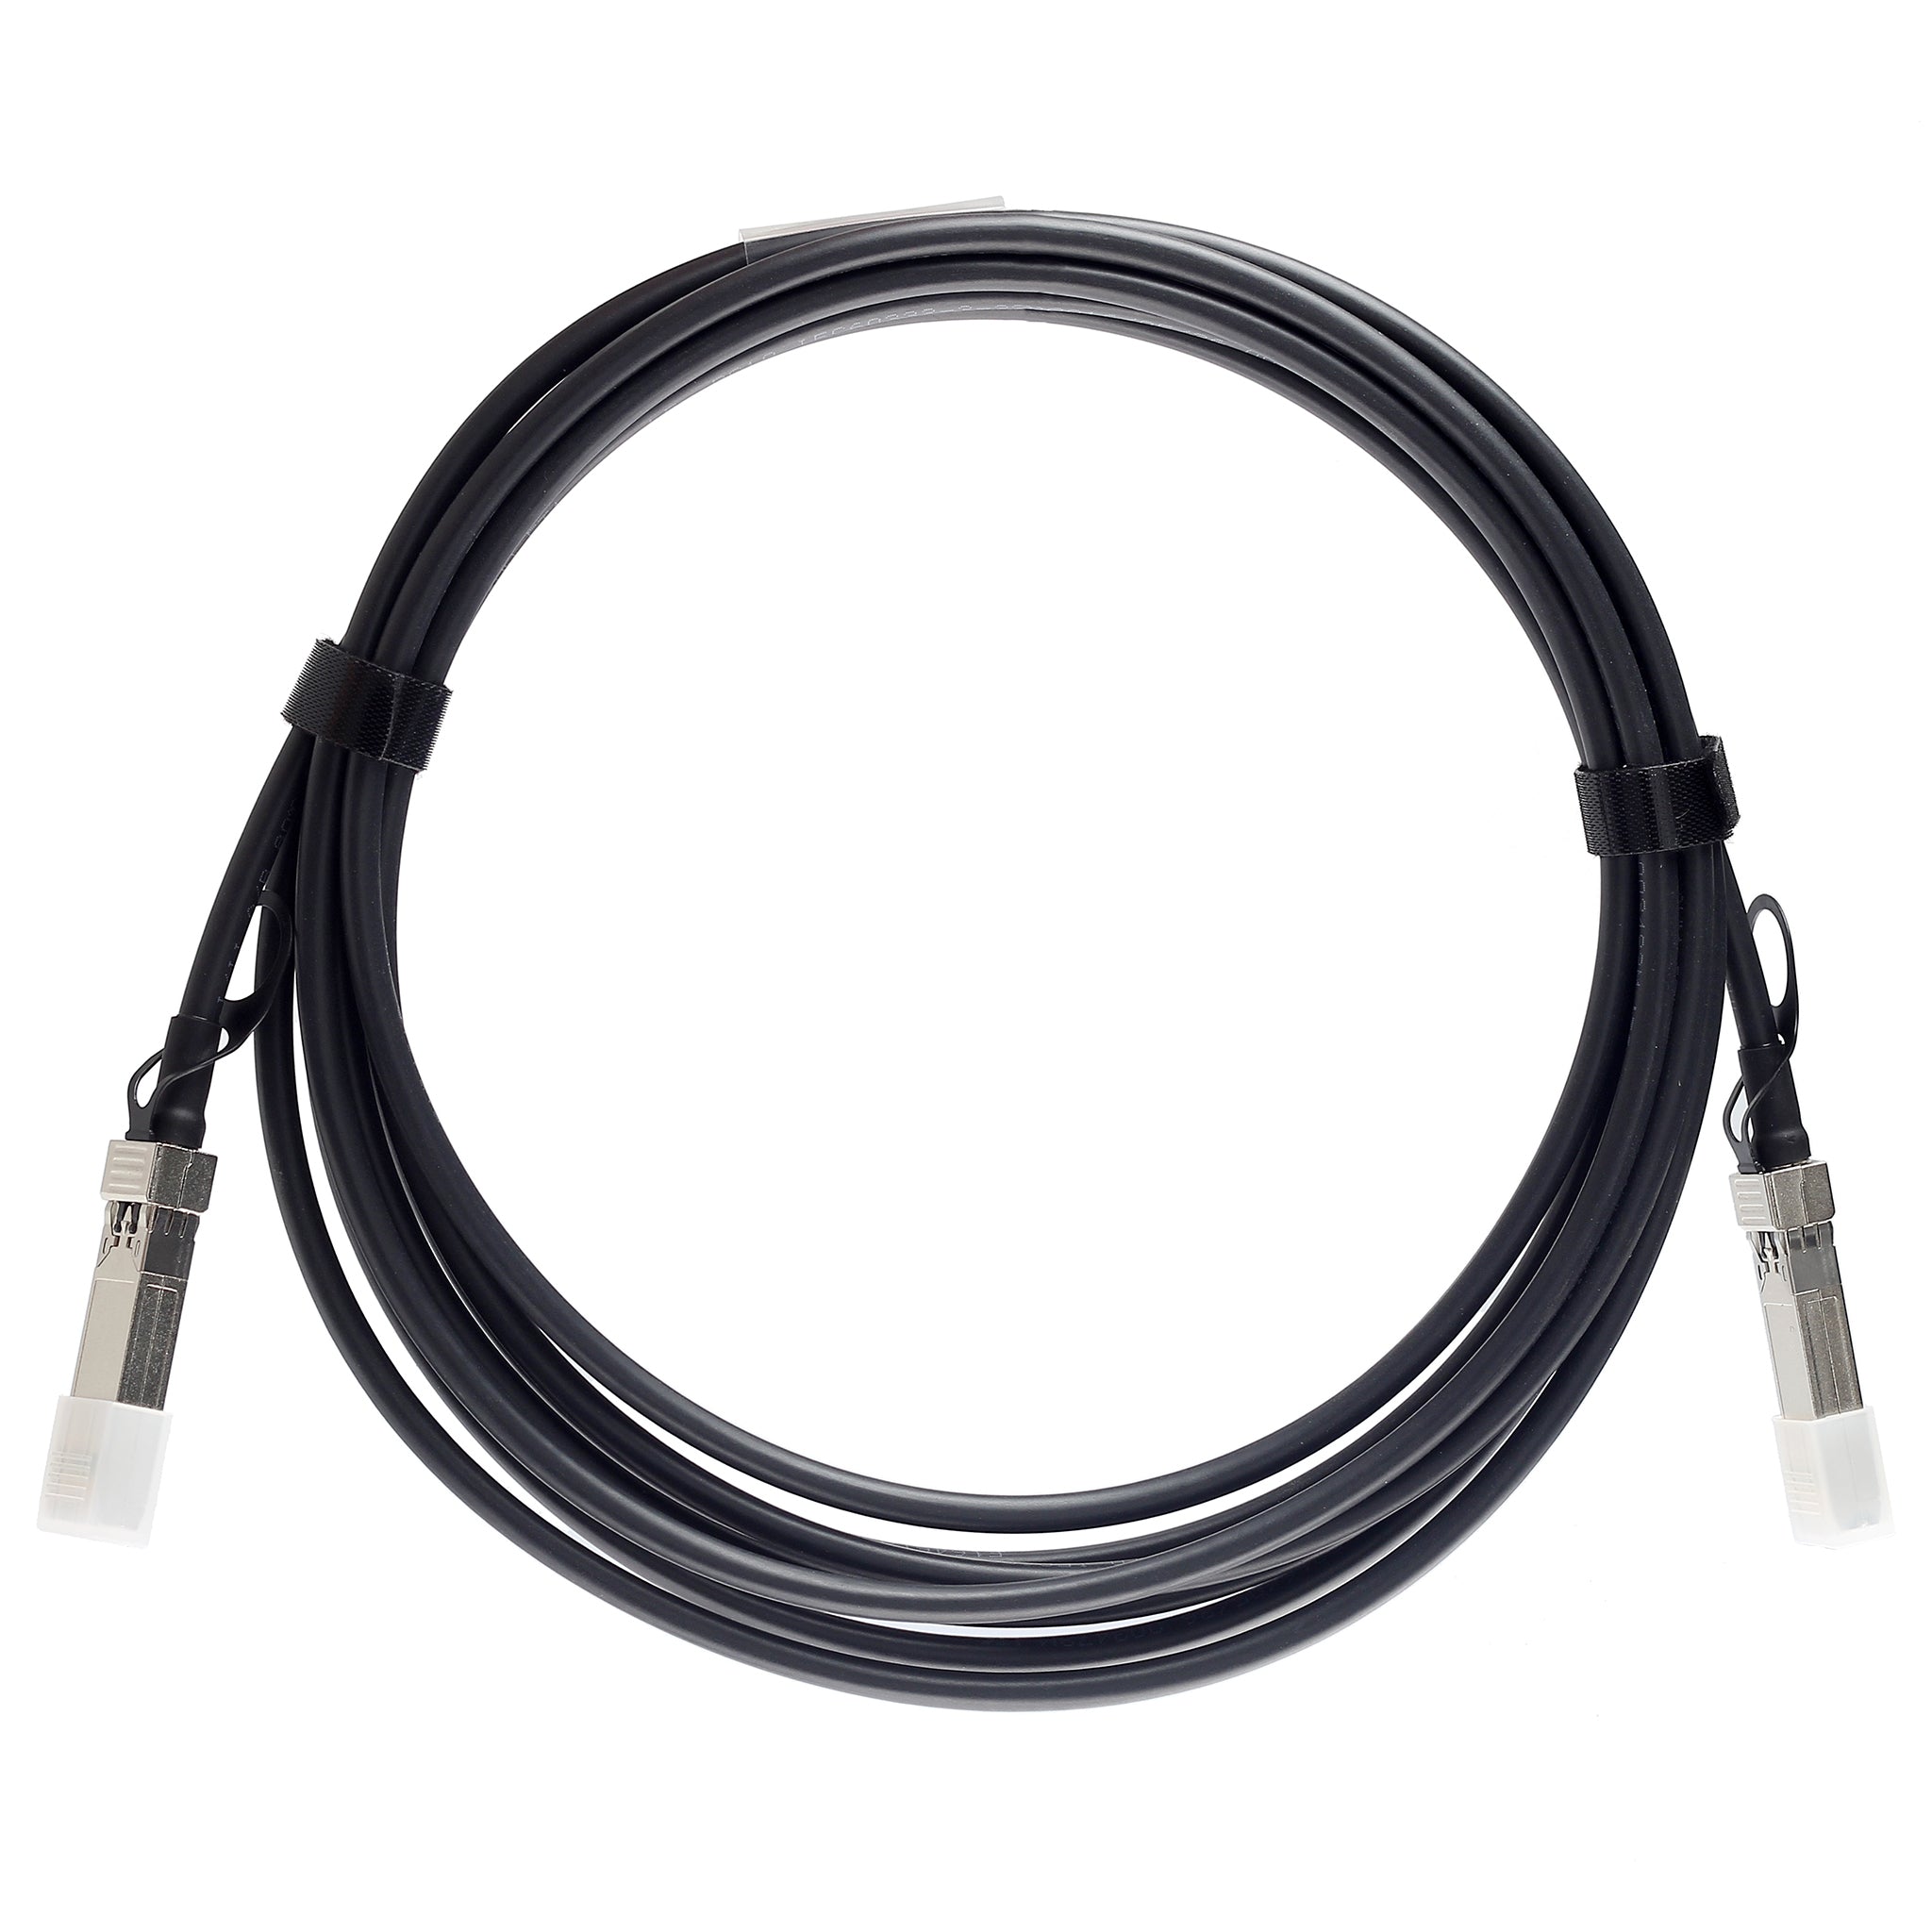 AA1403022-E6-C - 7m Avaya Nortel Compatible 10G SFP+ Passive Direct Attach Copper Twinax Cable